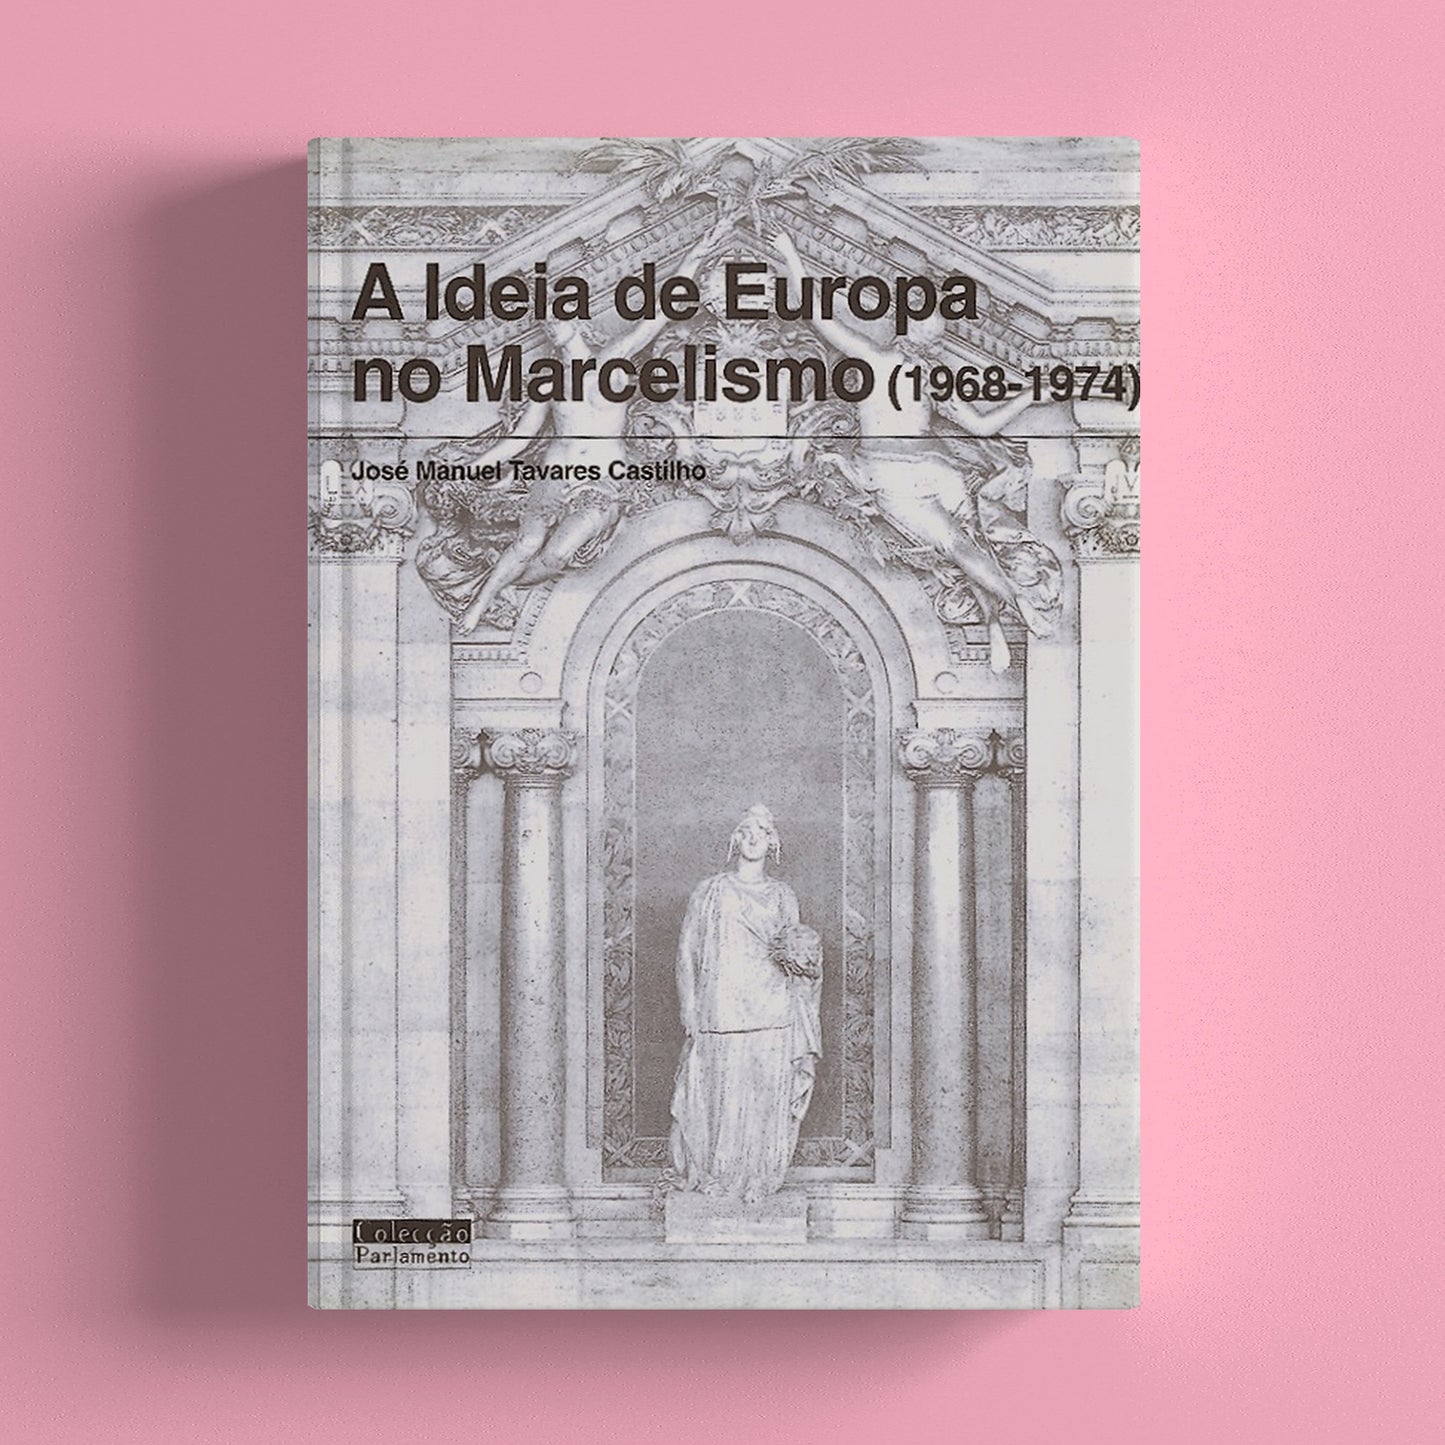 A Ideia de Europa no Marcelismo (1968-1974)